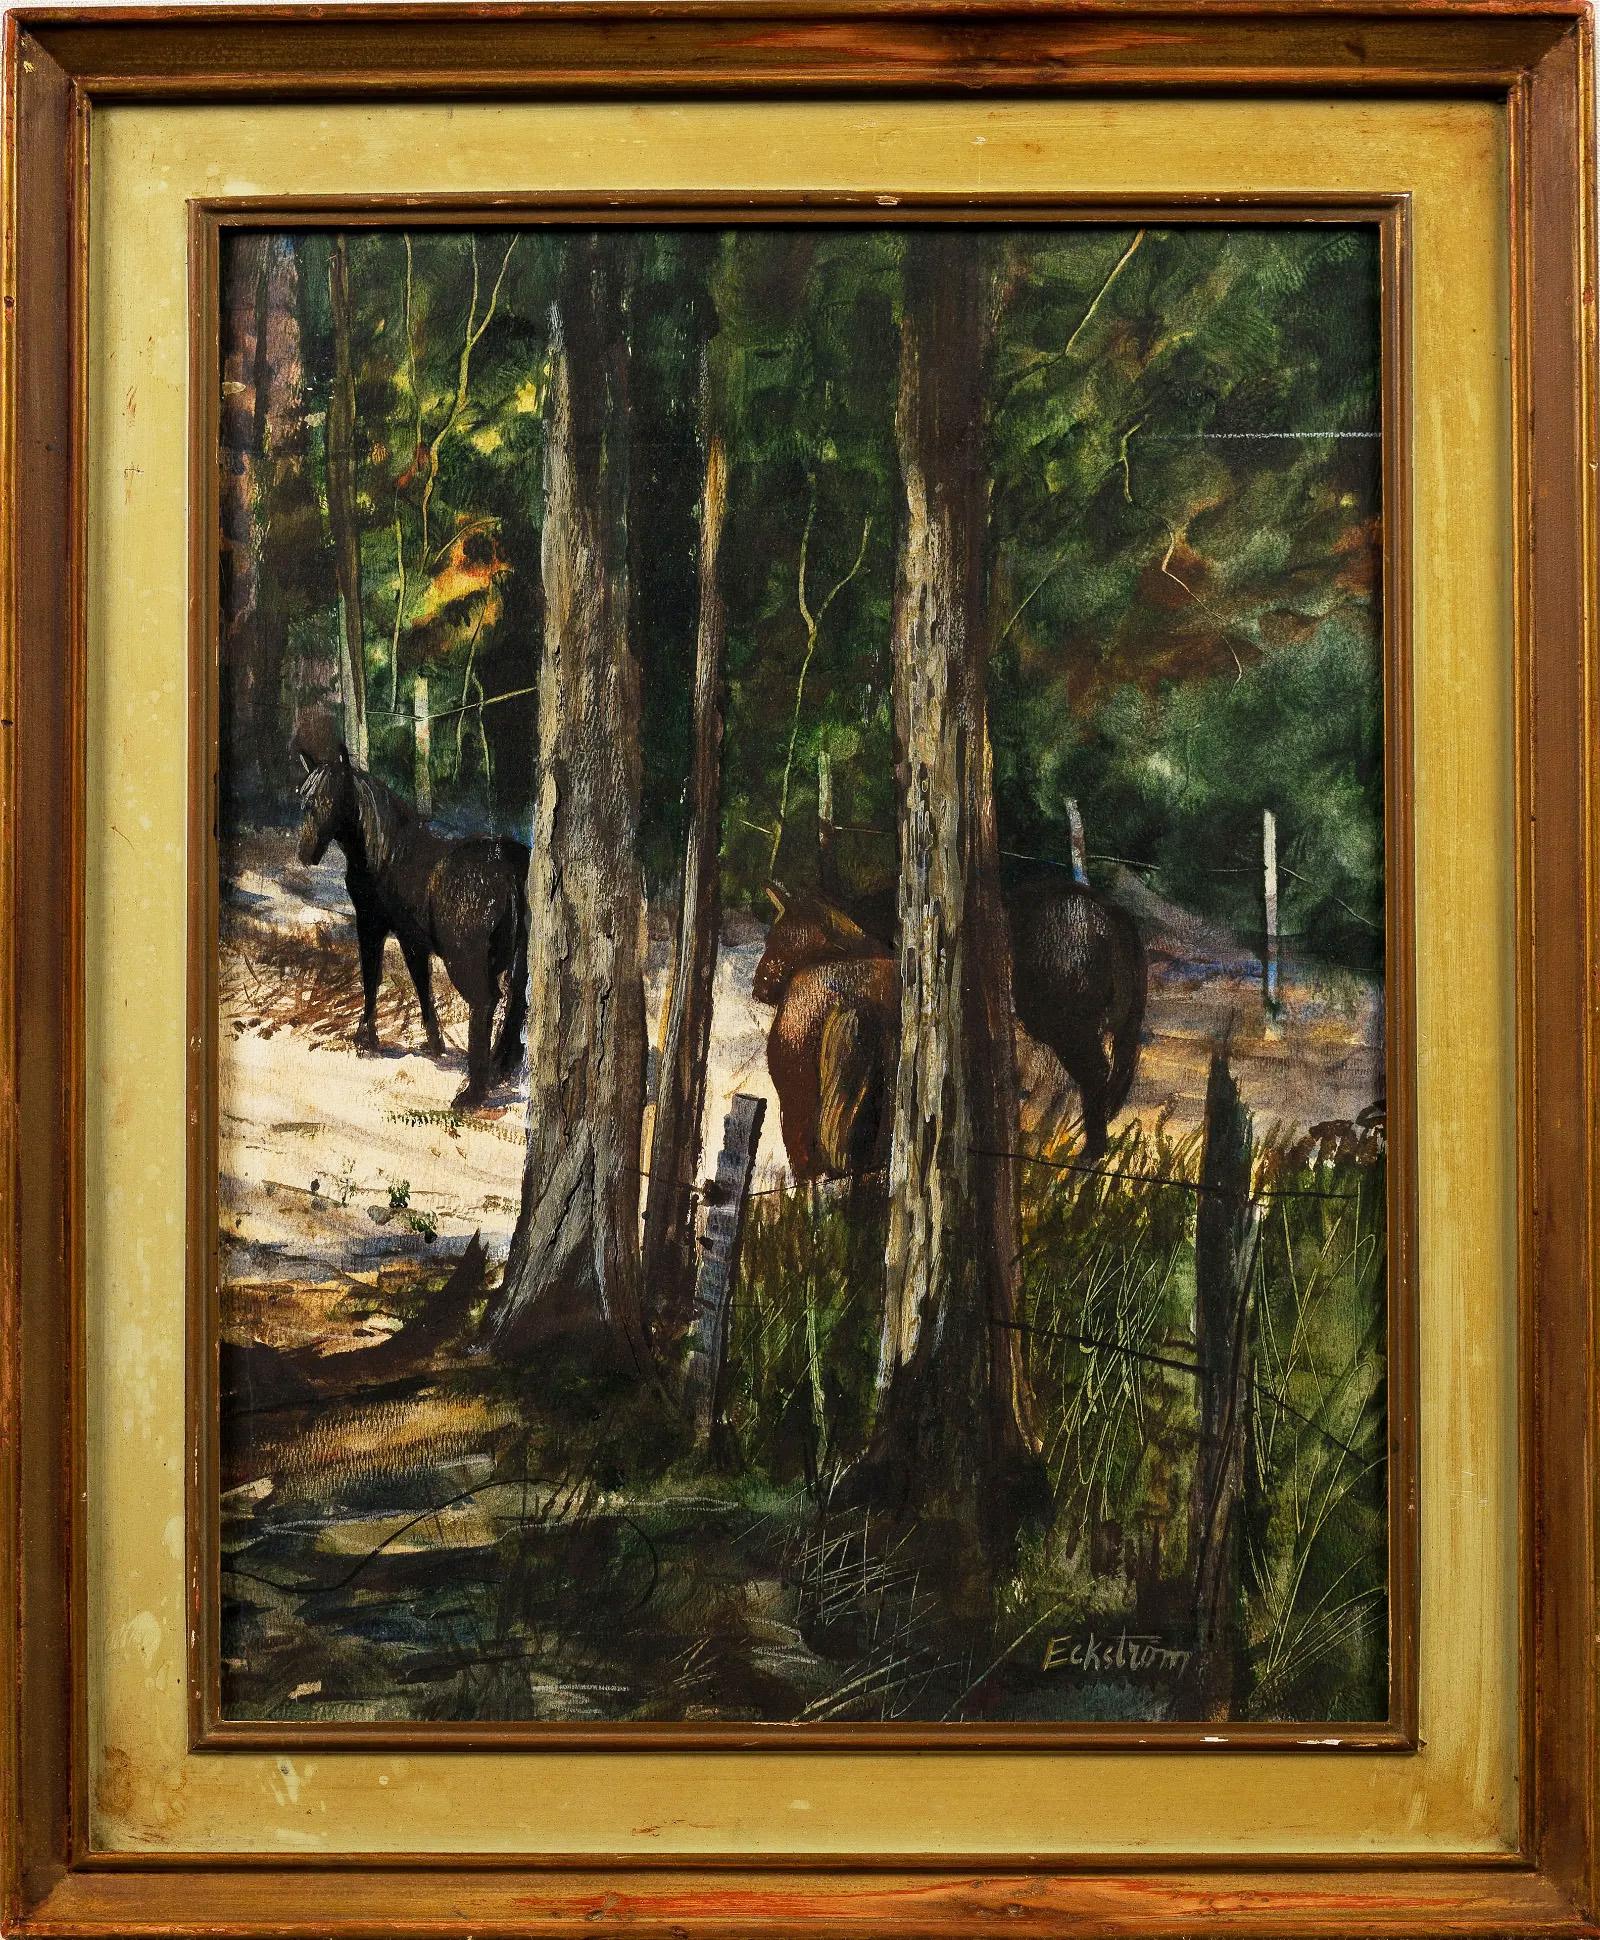 Signiertes Ölgemälde, Southern Pine Forest, Wildpferd, Sand Trail, gerahmt, Vintage – Painting von Cynthia Norton Eckstrom 